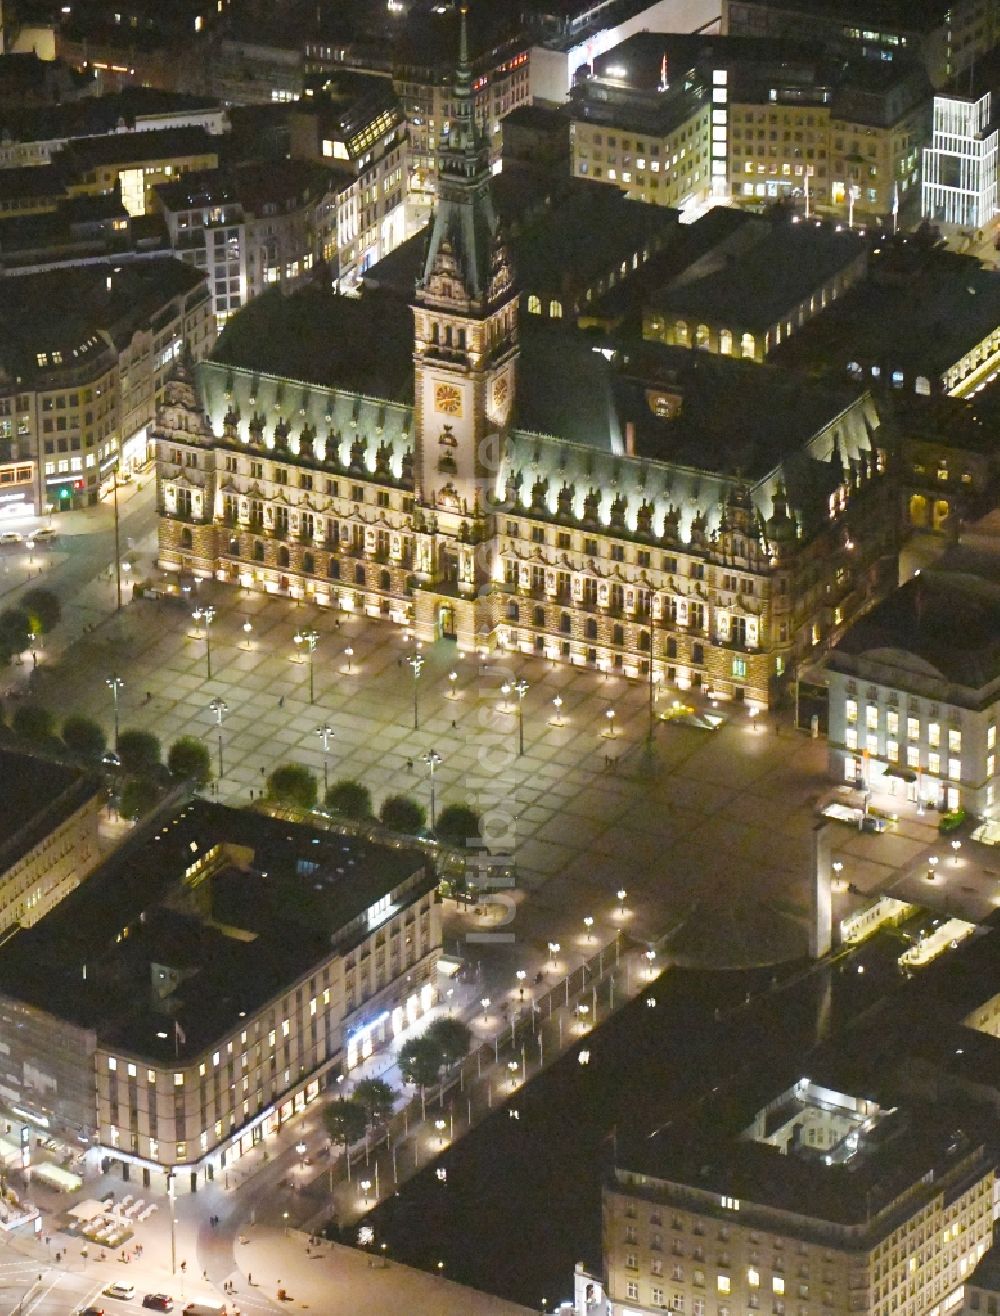 Nachtluftbild Hamburg - Nachtluftbild Gebäude der Stadtverwaltung - Rathaus am Marktplatz in Hamburg, Deutschland